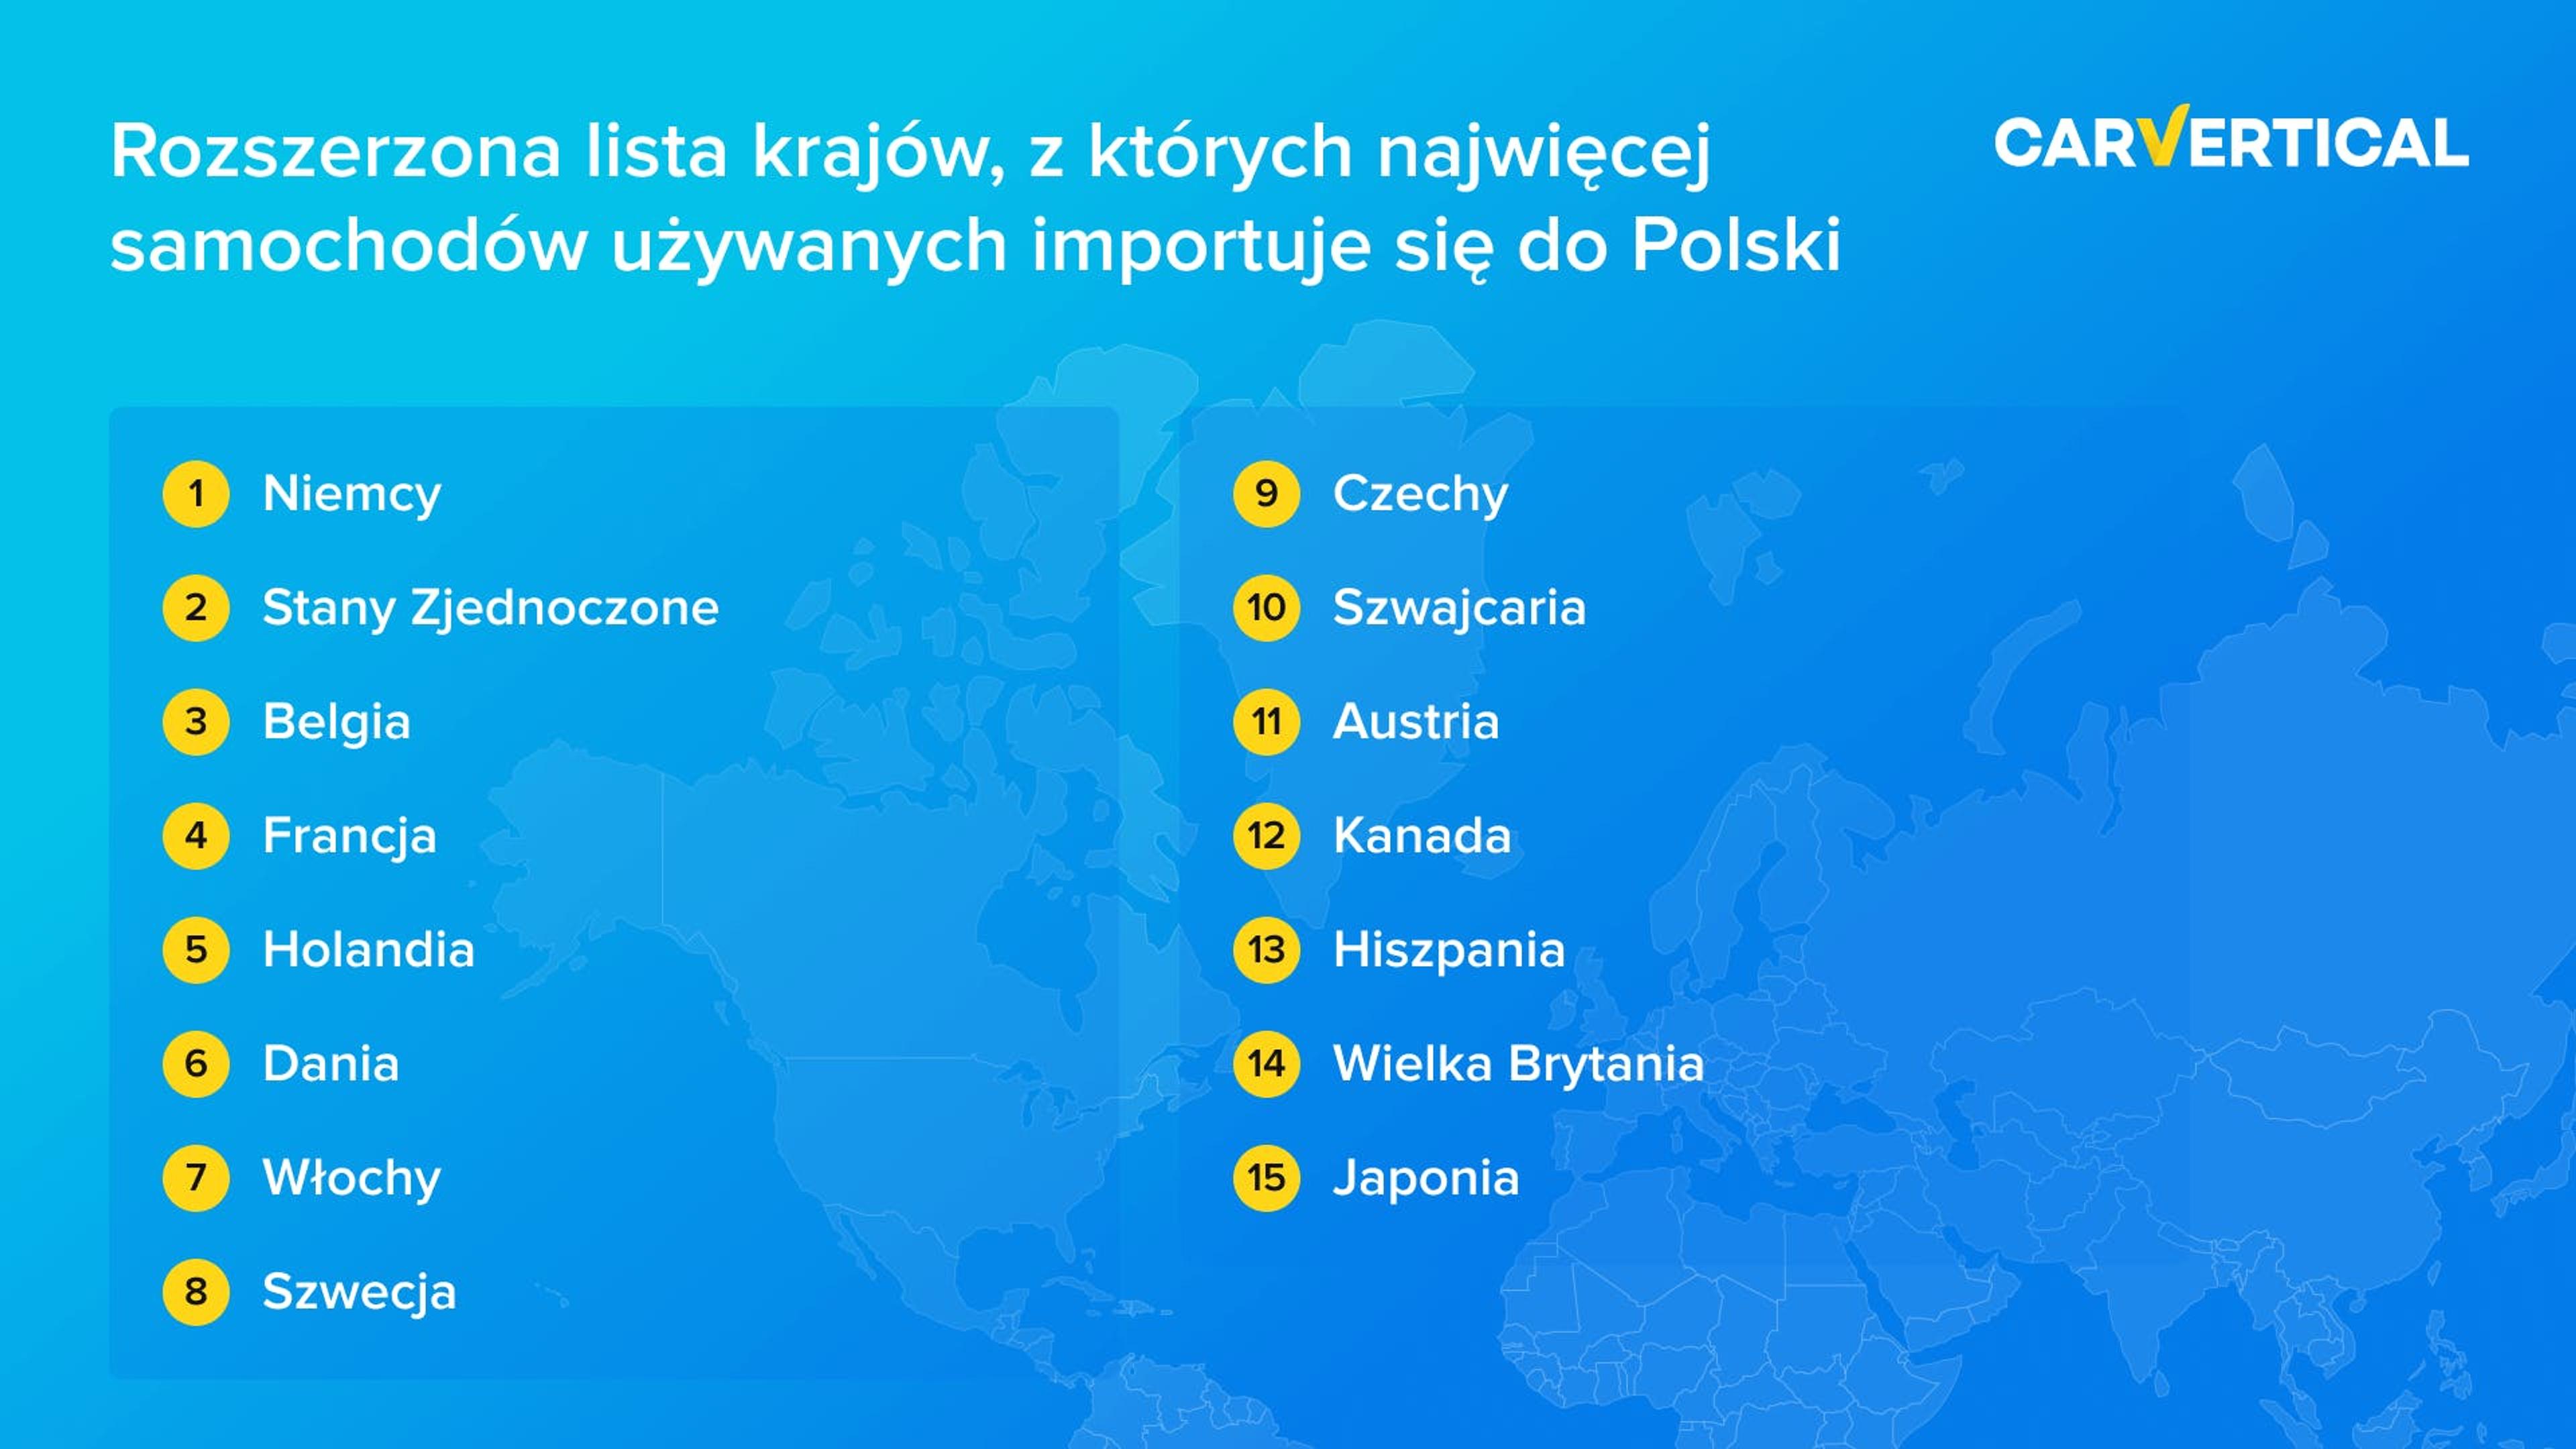 Rozszerzona lista krajow, z ktorych najwiecej samochodow uzywanych imortuje sie do Polski